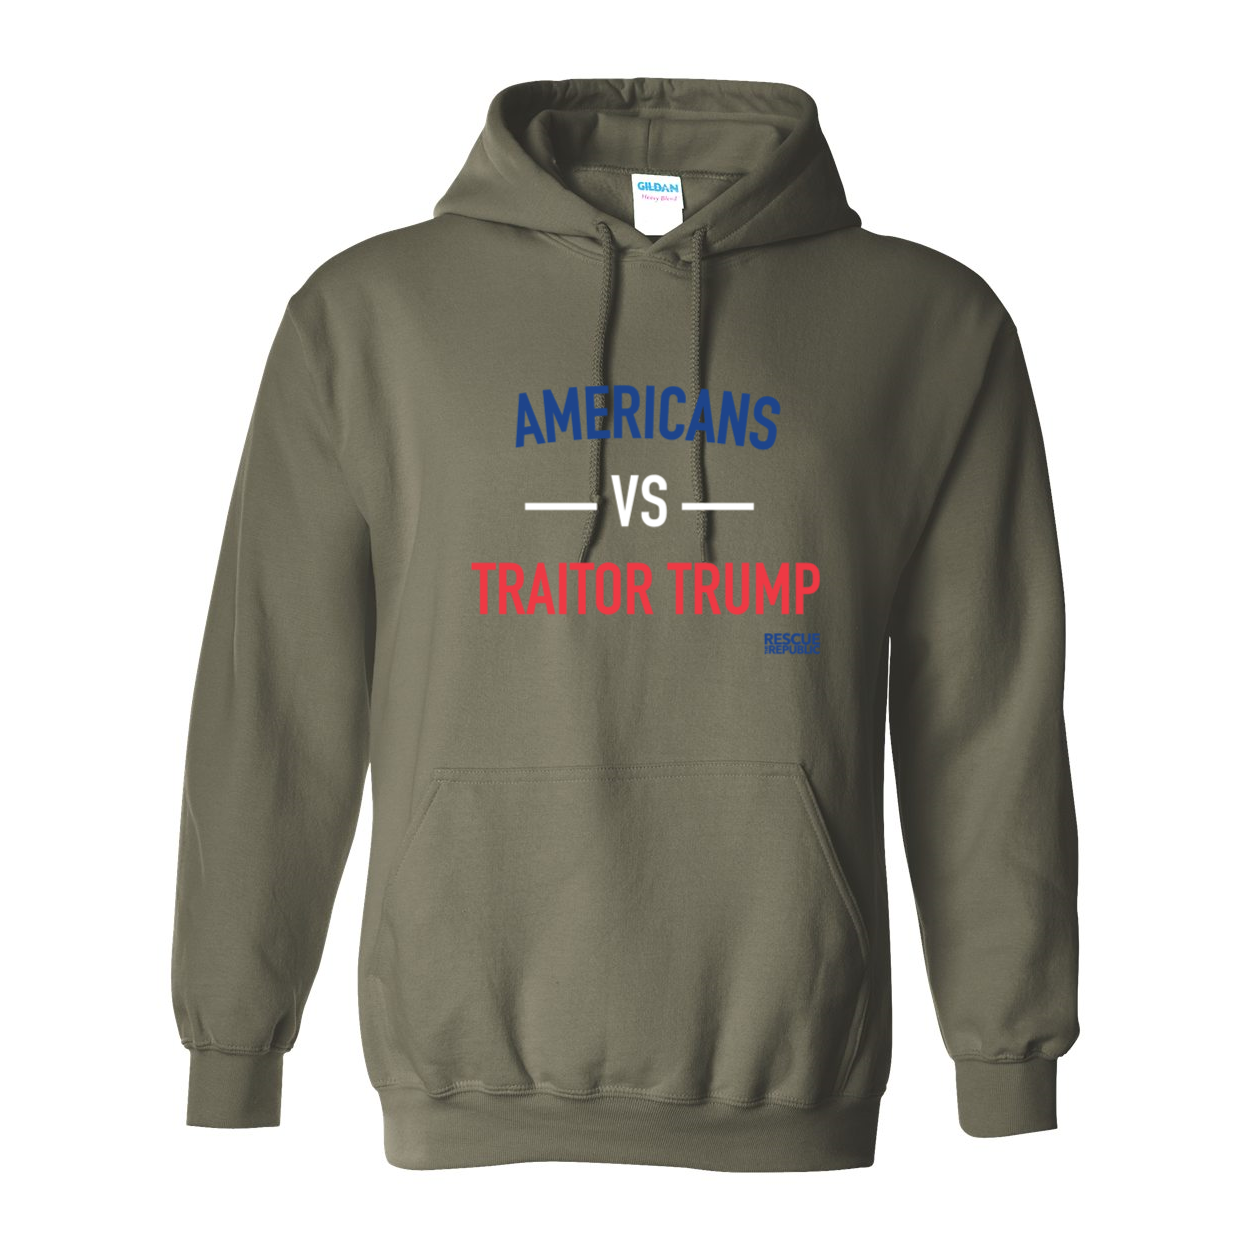 Americans VS Traitor Trump Hoodie Sweatshirt